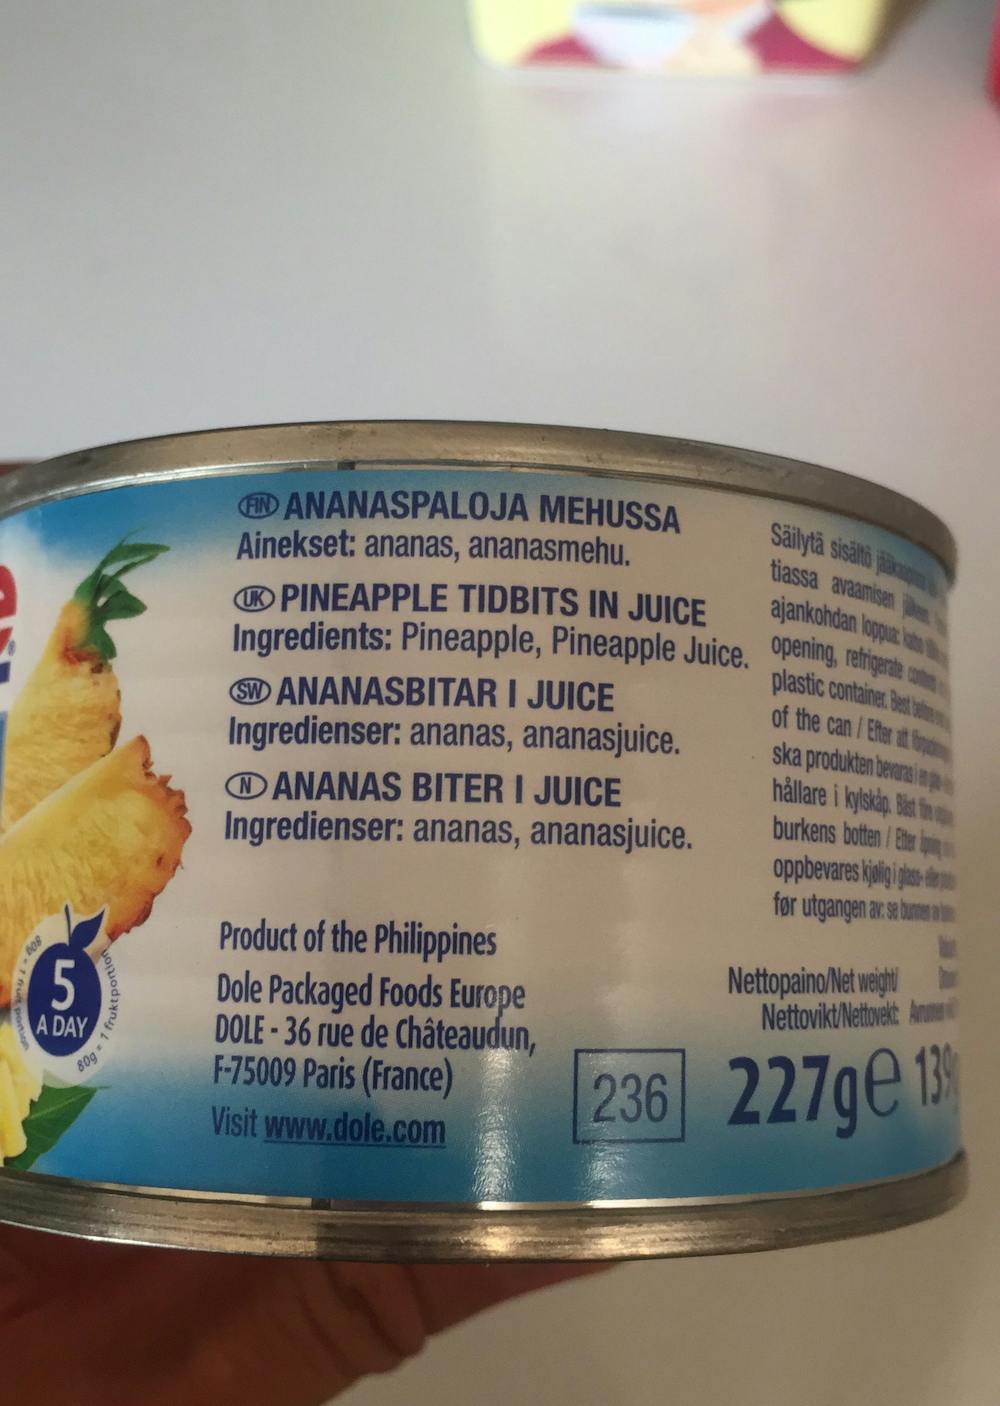 Ingredienslisten til Ananasbitar i juice, Dole